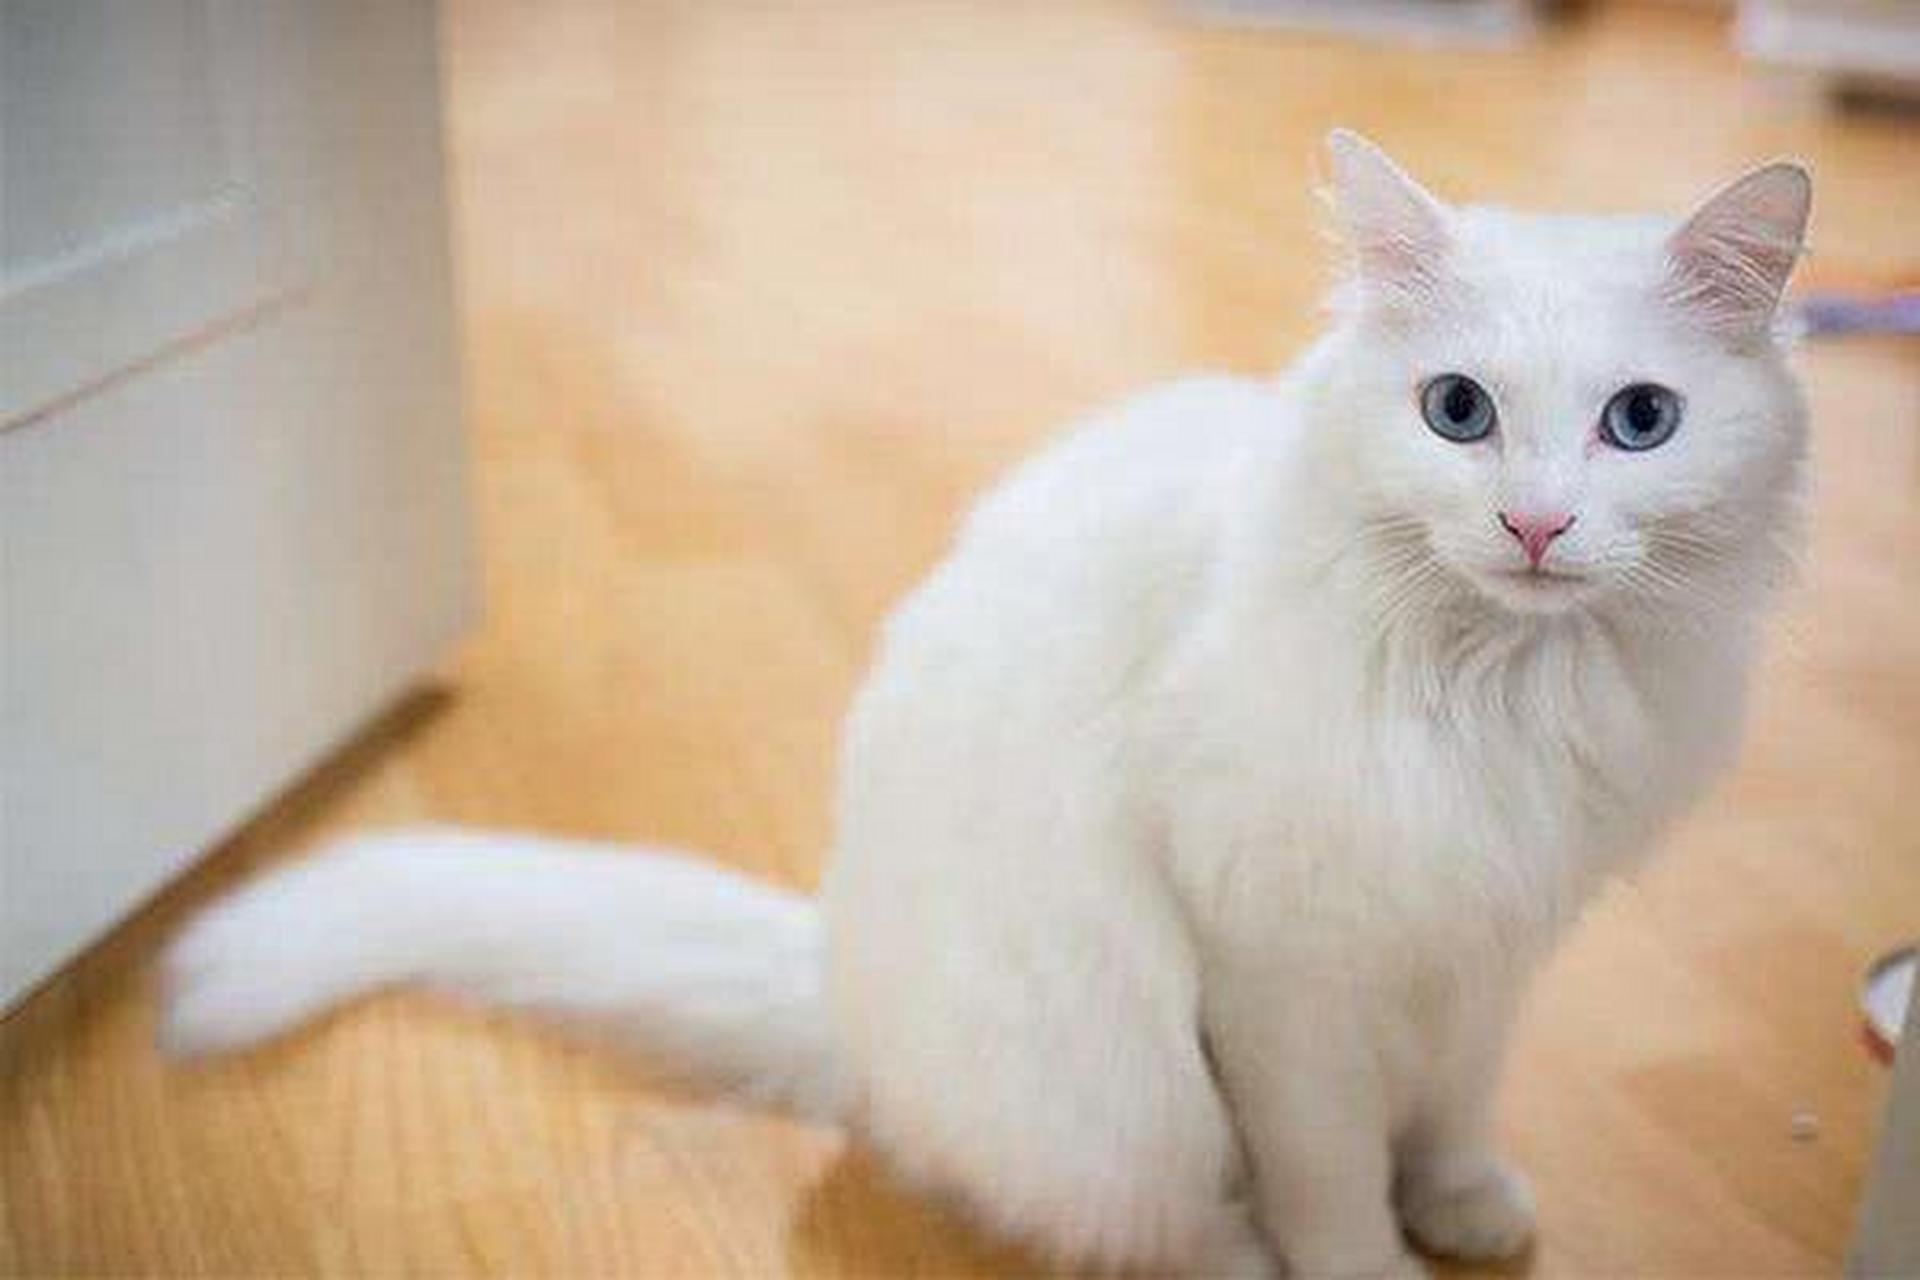 宠物英雄 土耳其安哥拉猫是最为古老的猫品种之一,源于土耳其,拥有